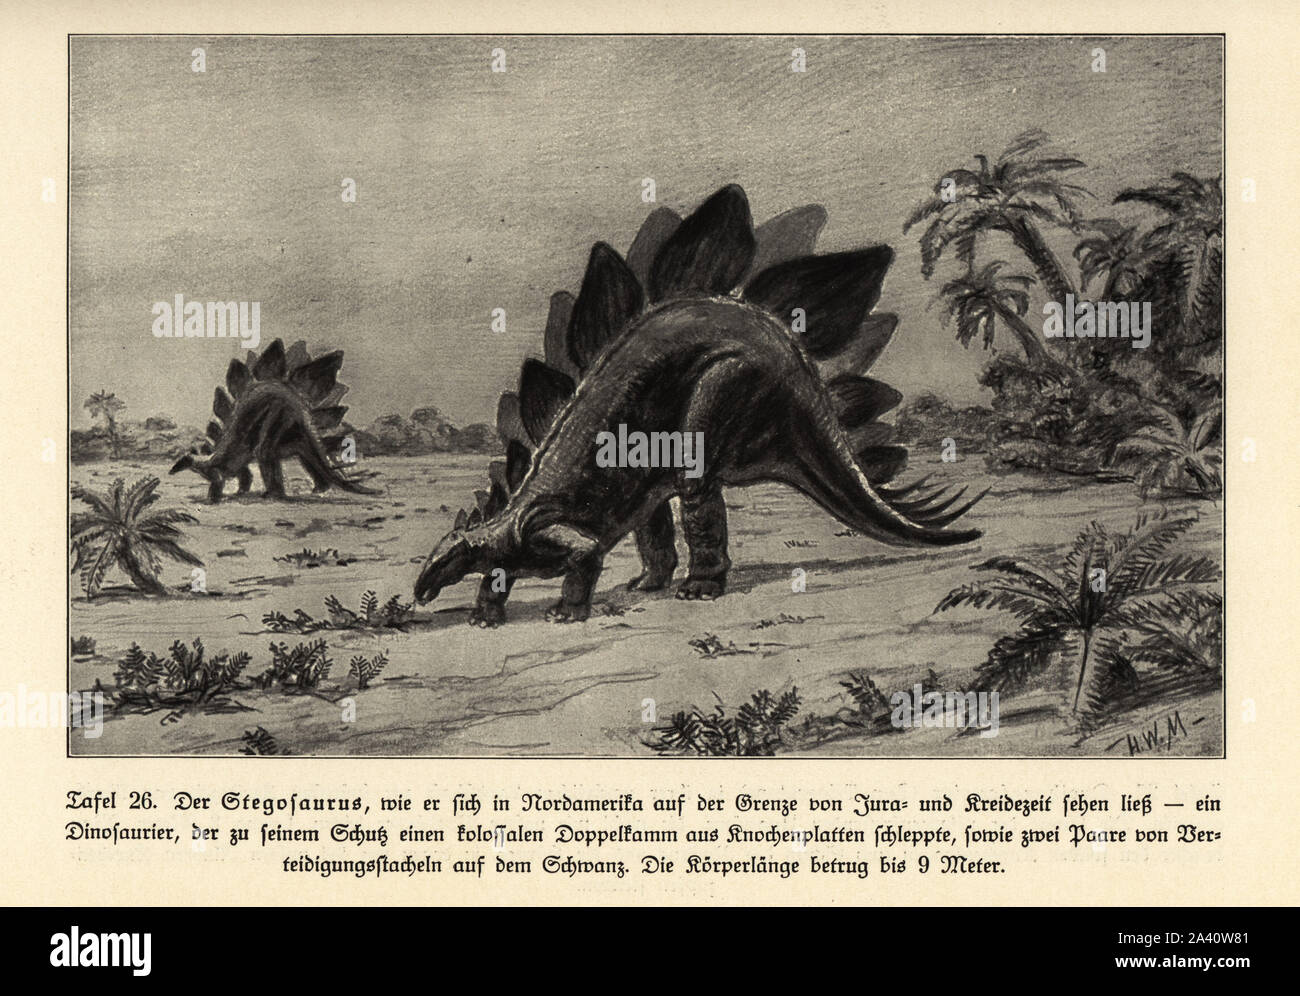 Reconstruction of an extinct Stegosaurus, North America, Jurassic and Cretaceous period. Illustration by Hugo Wolff-Maage from Wilhelm Bolsche’s Das Leben der Urwelt, Prehistoric Life, Georg Dollheimer, Leipzig, 1932. Stock Photo